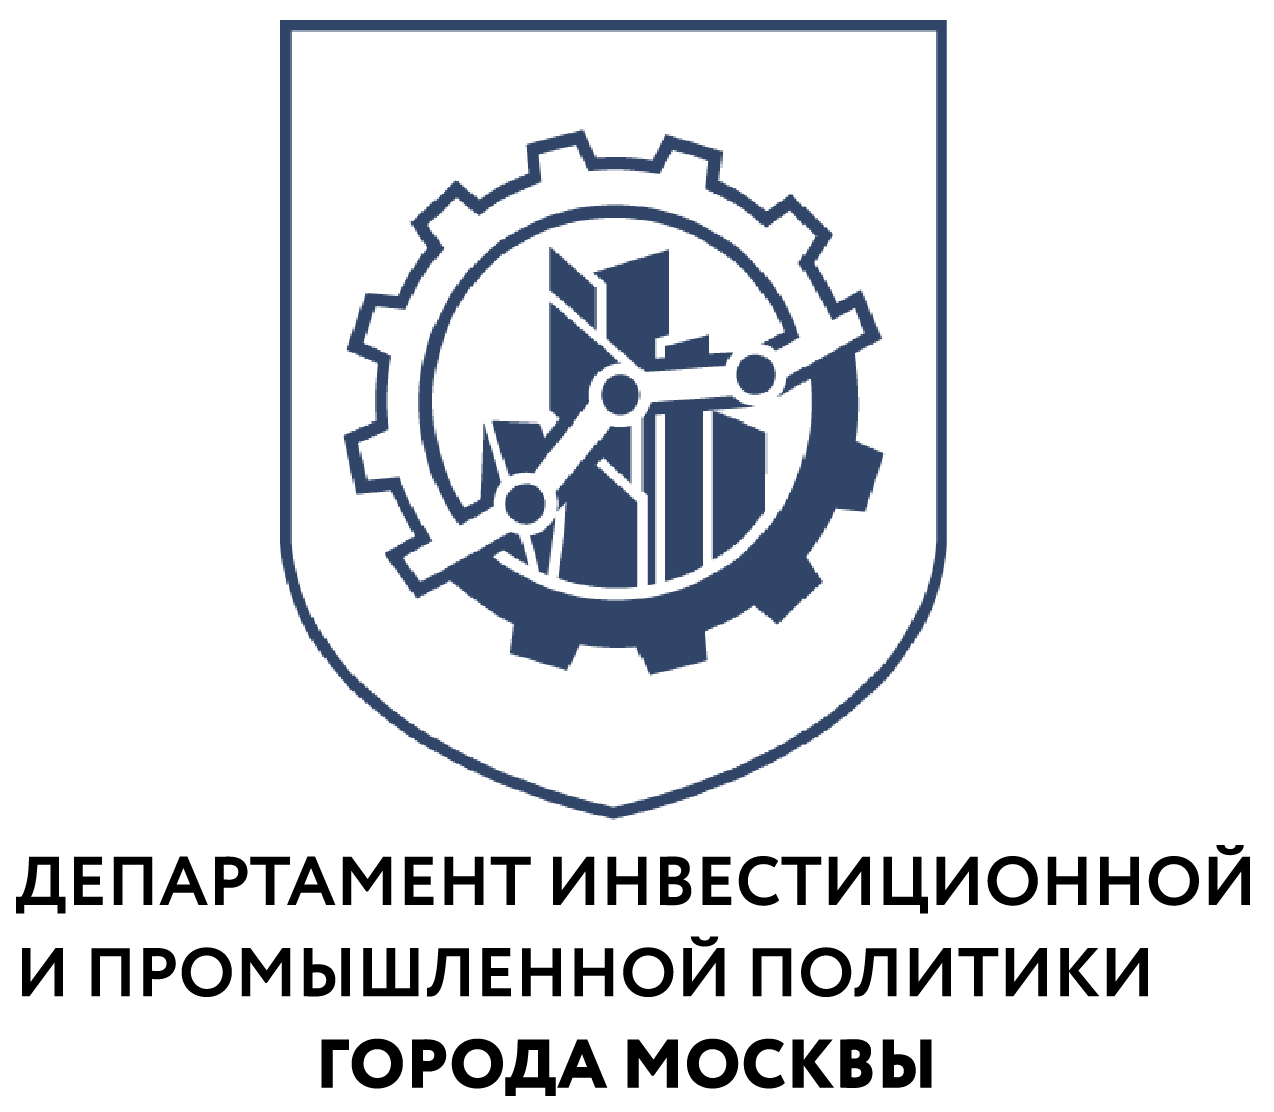 Правительство Москвы подписало несколько соглашений для финансовой поддержки промышленных компаний - фото 1